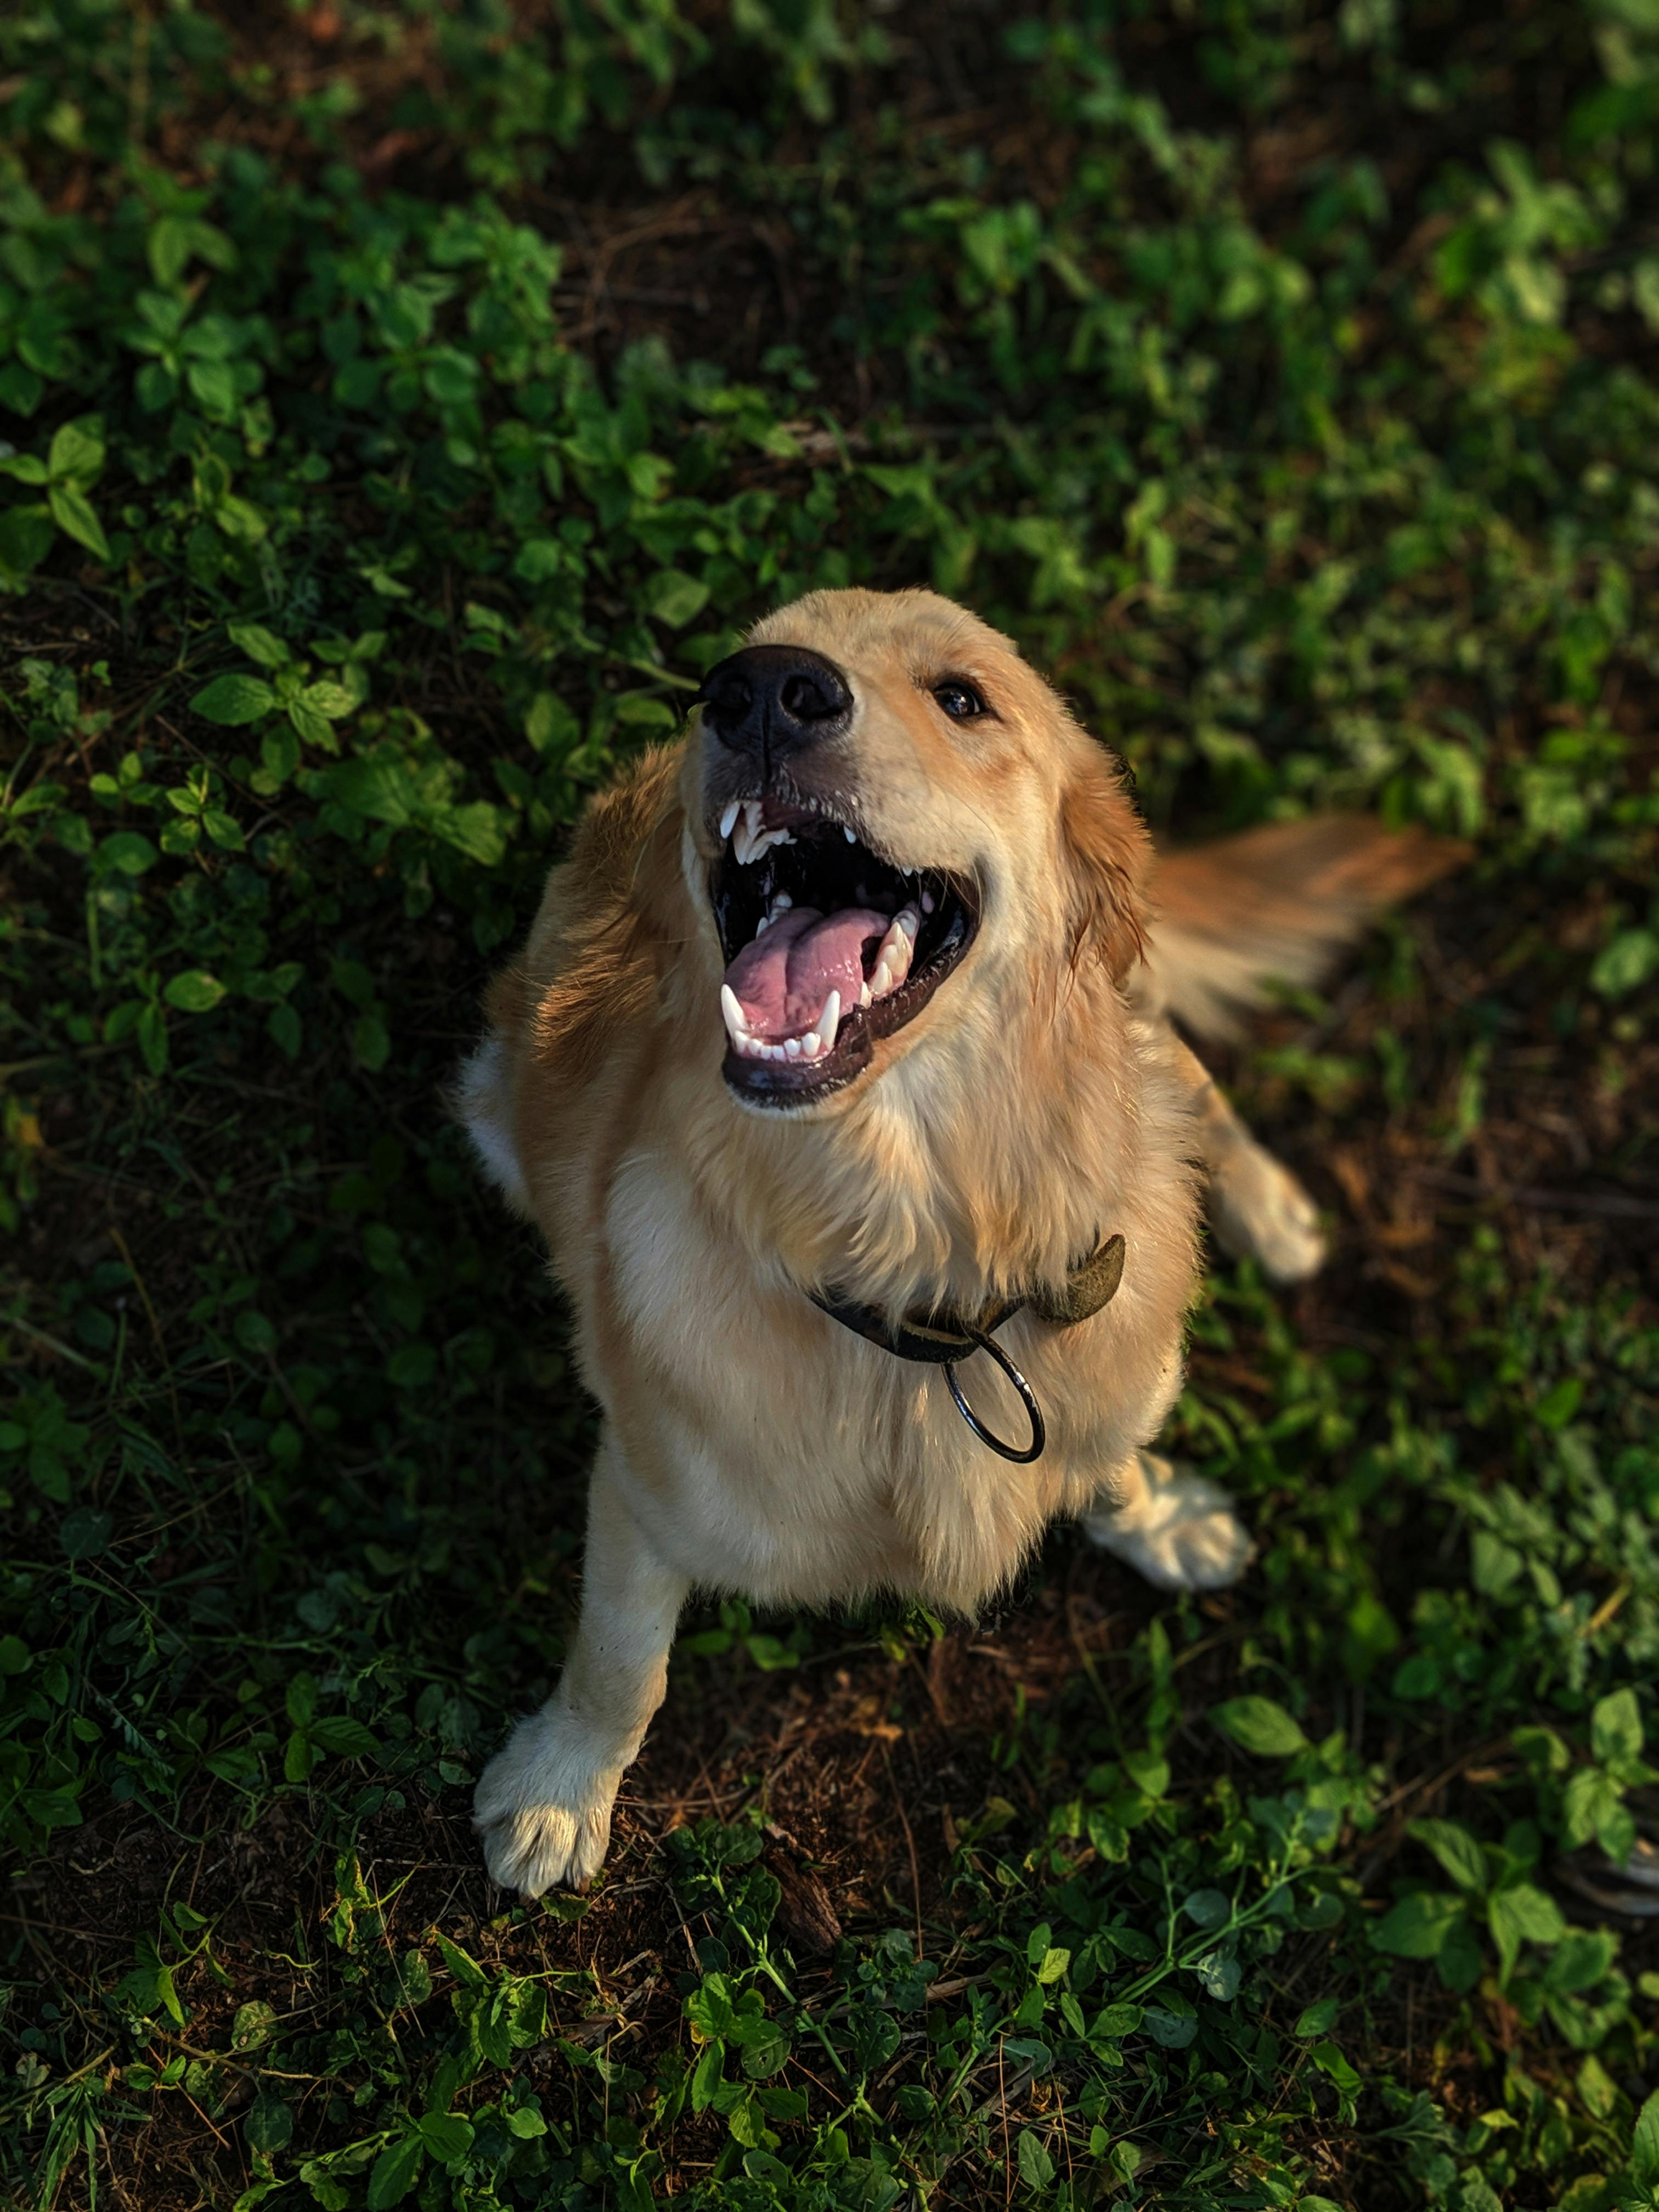 Nếu bạn yêu thích loài chó Golden Retriever, hãy xem hình ảnh đáng yêu và tràn đầy năng lượng của chúng trên đây. Chúng sẽ khiến bạn cảm thấy thư giãn và niềm vui đầy tươi trẻ khi ngắm nhìn những bức ảnh tuyệt đẹp này. Hãy tận hưởng những giây phút tuyệt vời với loài chó ngoan ngoãn và dễ mến này bạn nhé!